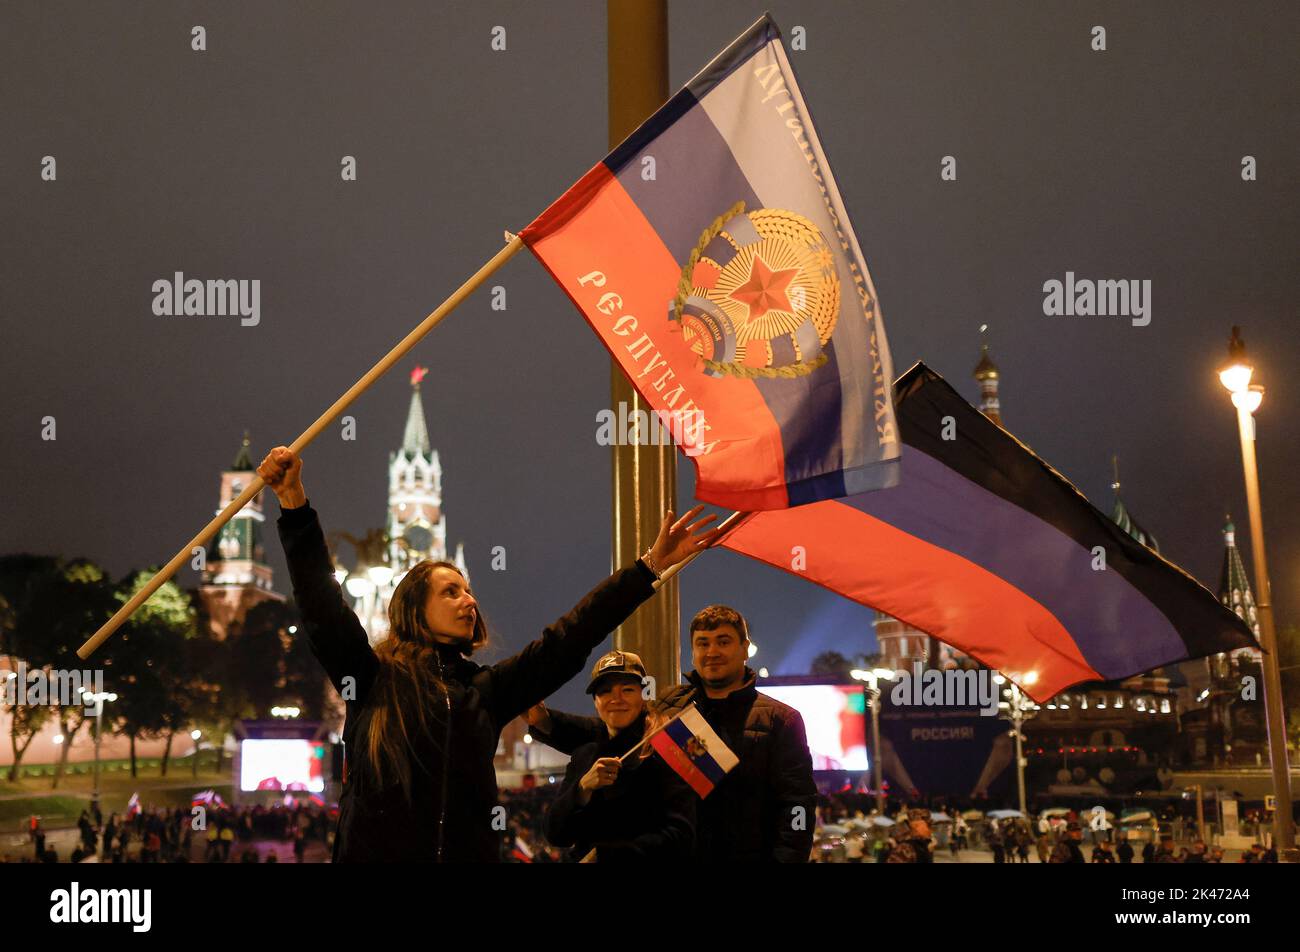 Le persone detengono bandiere delle autoproclamate Repubbliche di Donetsk e Lugansk mentre gli spettatori si riuniscono davanti agli schermi per assistere a un concerto che segna l'annessione dichiarata dei territori controllati dalla Russia di quattro regioni ucraine di Donetsk, Luhansk, Kherson e Zaporizhzhia; Dopo aver indetto quello che le autorità russe hanno chiamato referendum nelle aree occupate dell'Ucraina, condannate da Kyiv e dai governi di tutto il mondo, vicino alla Piazza Rossa nel centro di Mosca, Russia, 30 settembre 2022. FOTOGRAFO REUTERS/REUTERS Foto Stock